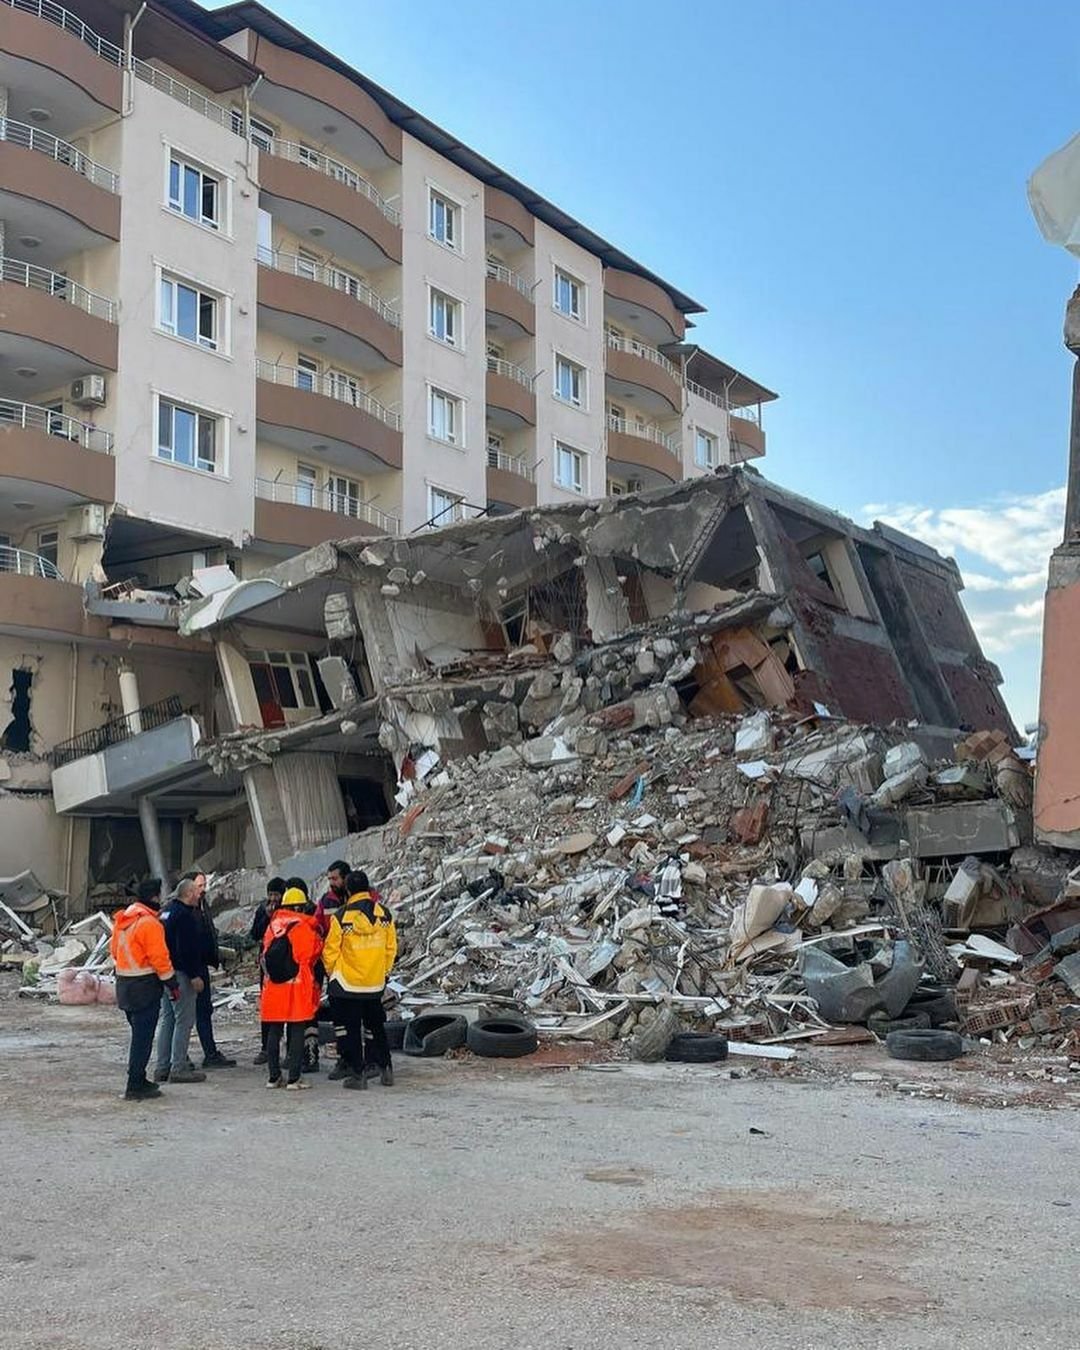 Lejlu Abbasovou zasáhlo zemětřesení v Turecku na osobní úrovni